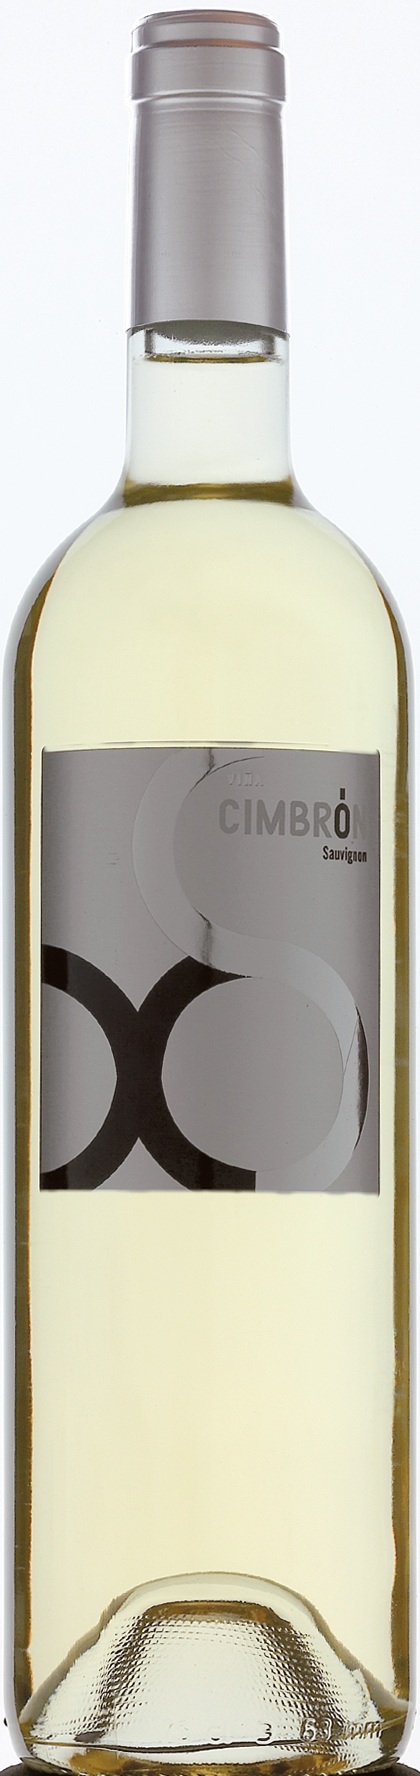 Imagen de la botella de Vino Viña Cimbrón Sauvignon